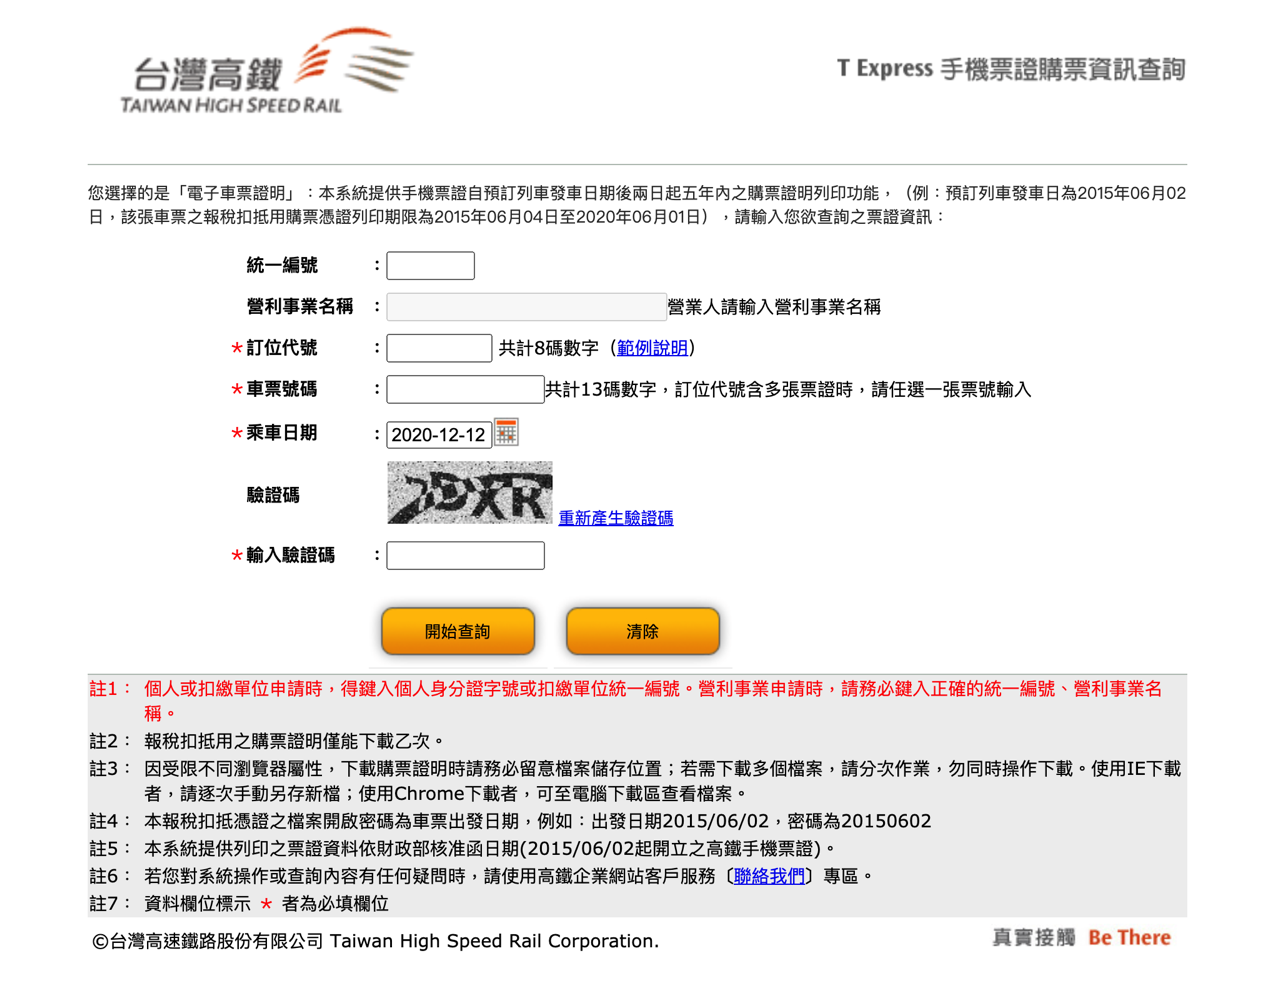 高鐵 T Express 手機 App 電子車票購票證明列印